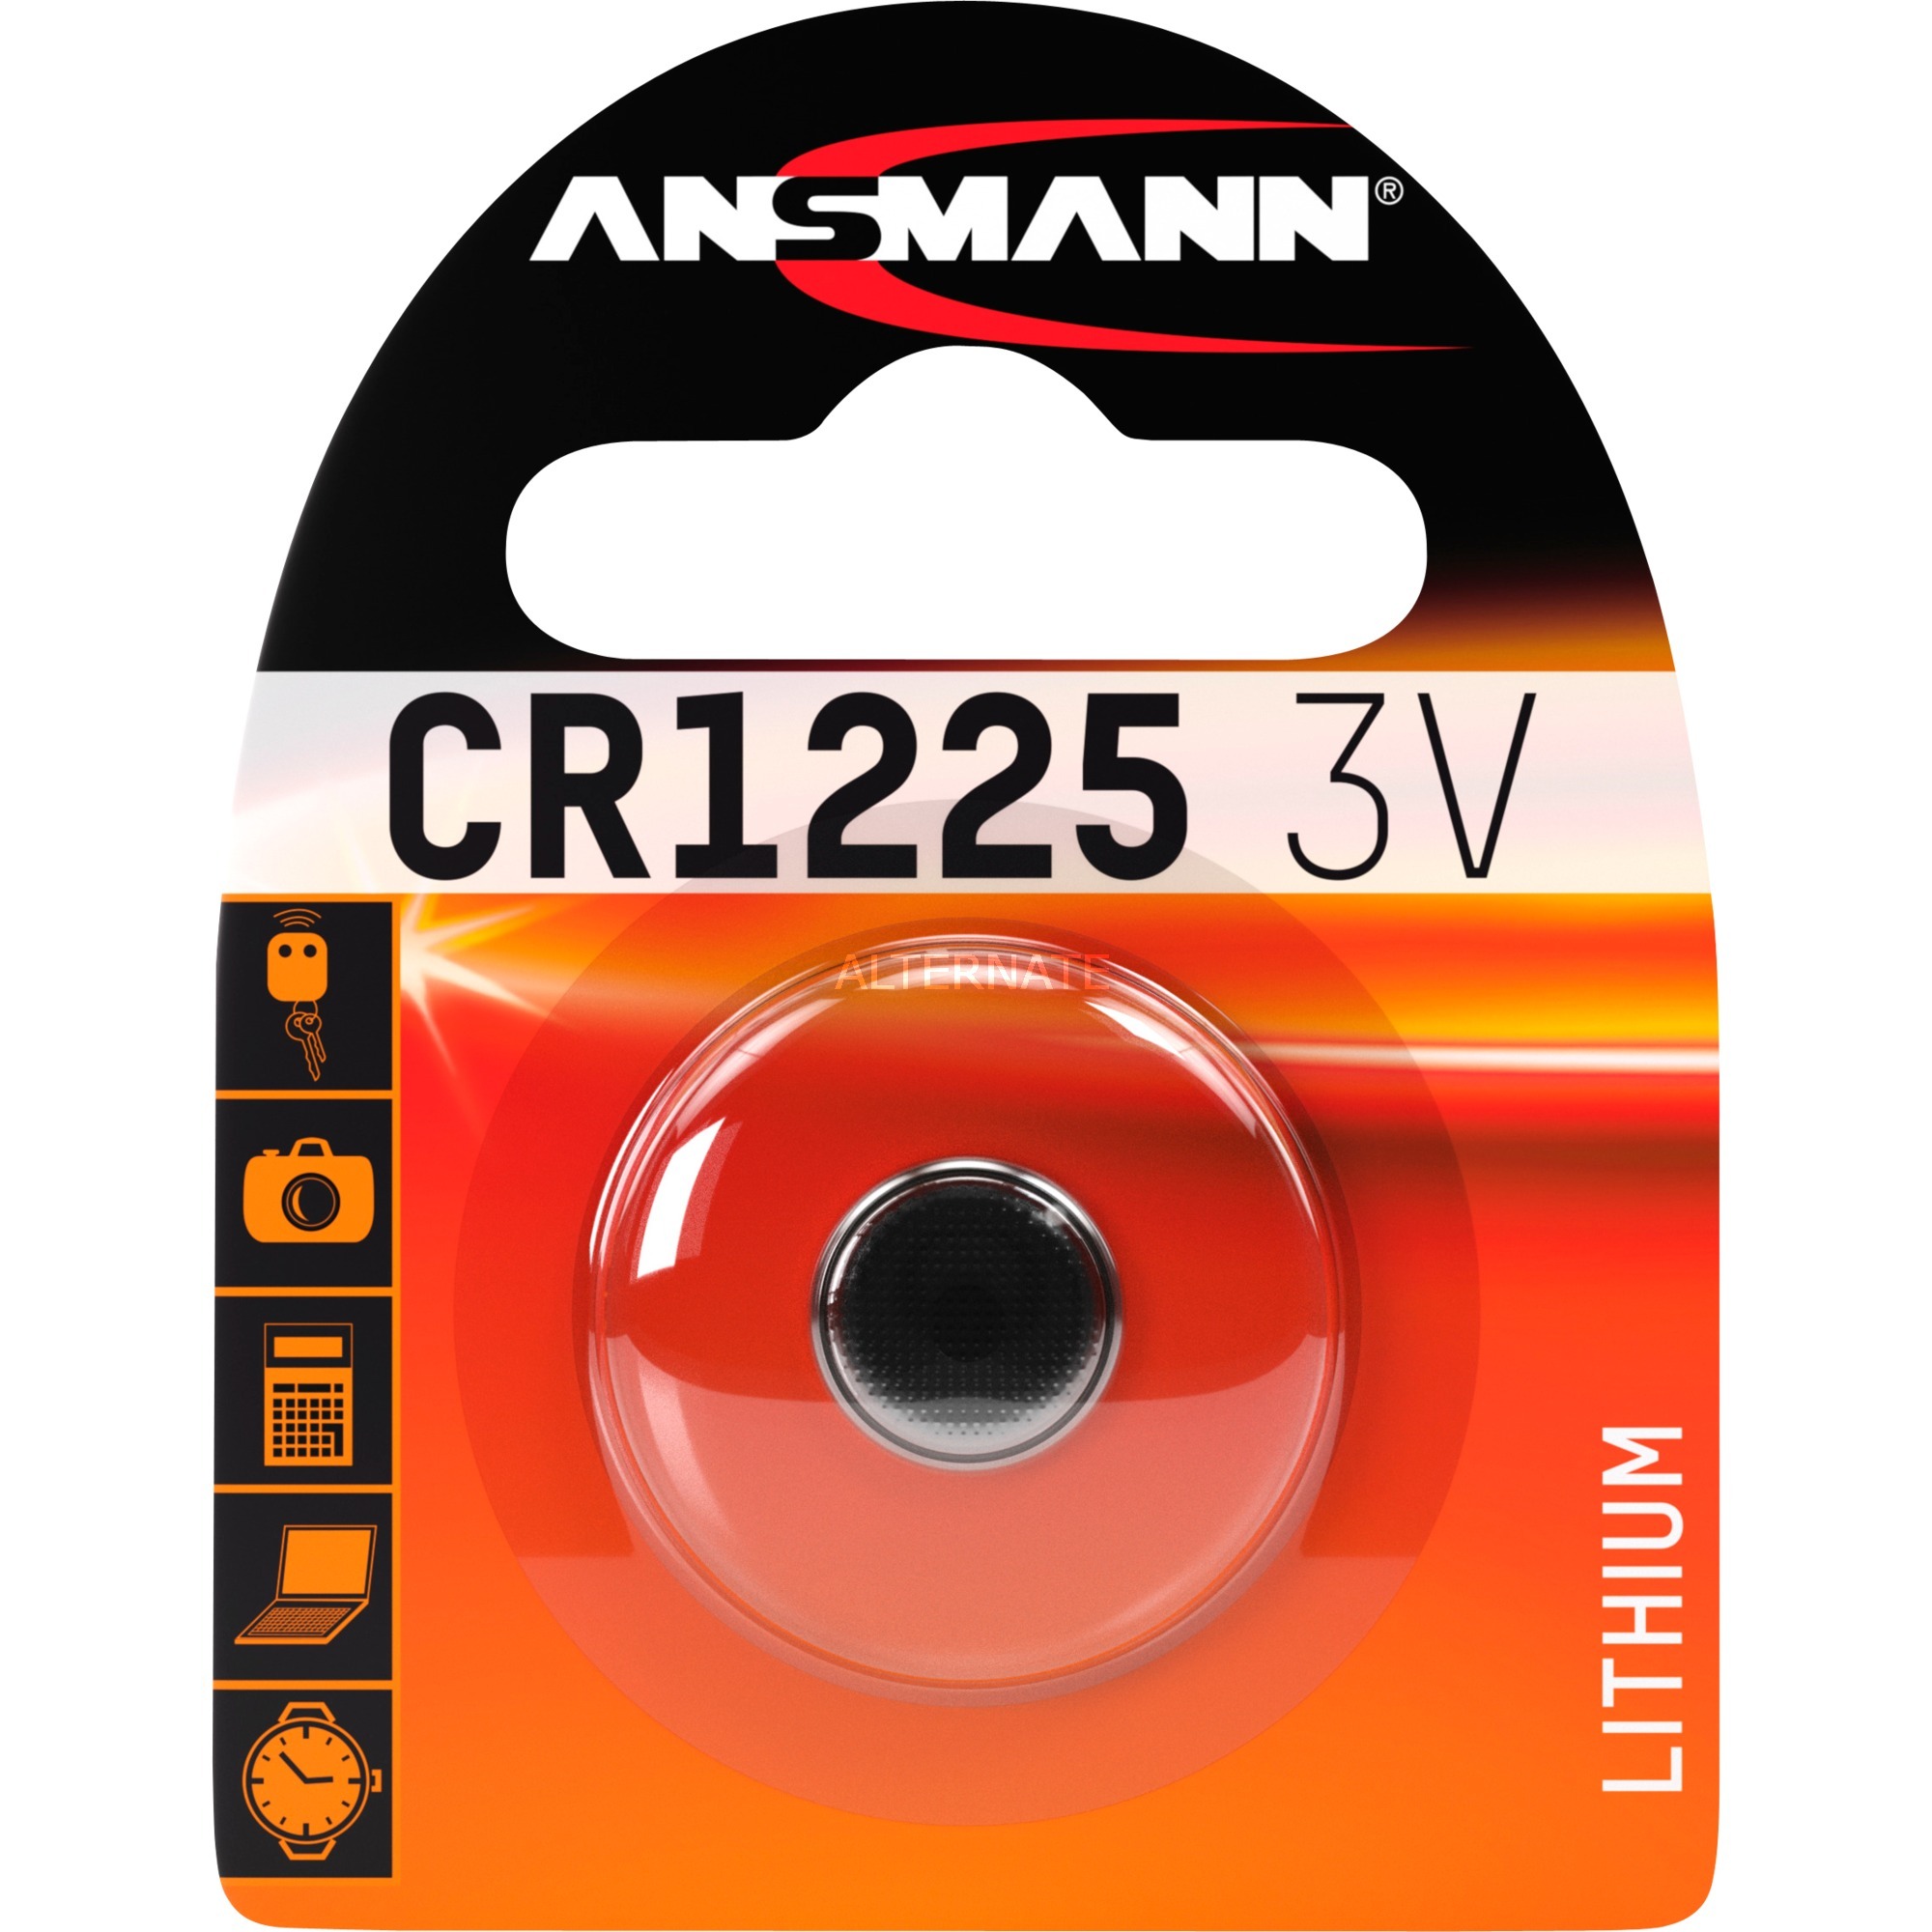 Image of Alternate - Lithium Knopfzelle CR1225, Batterie online einkaufen bei Alternate